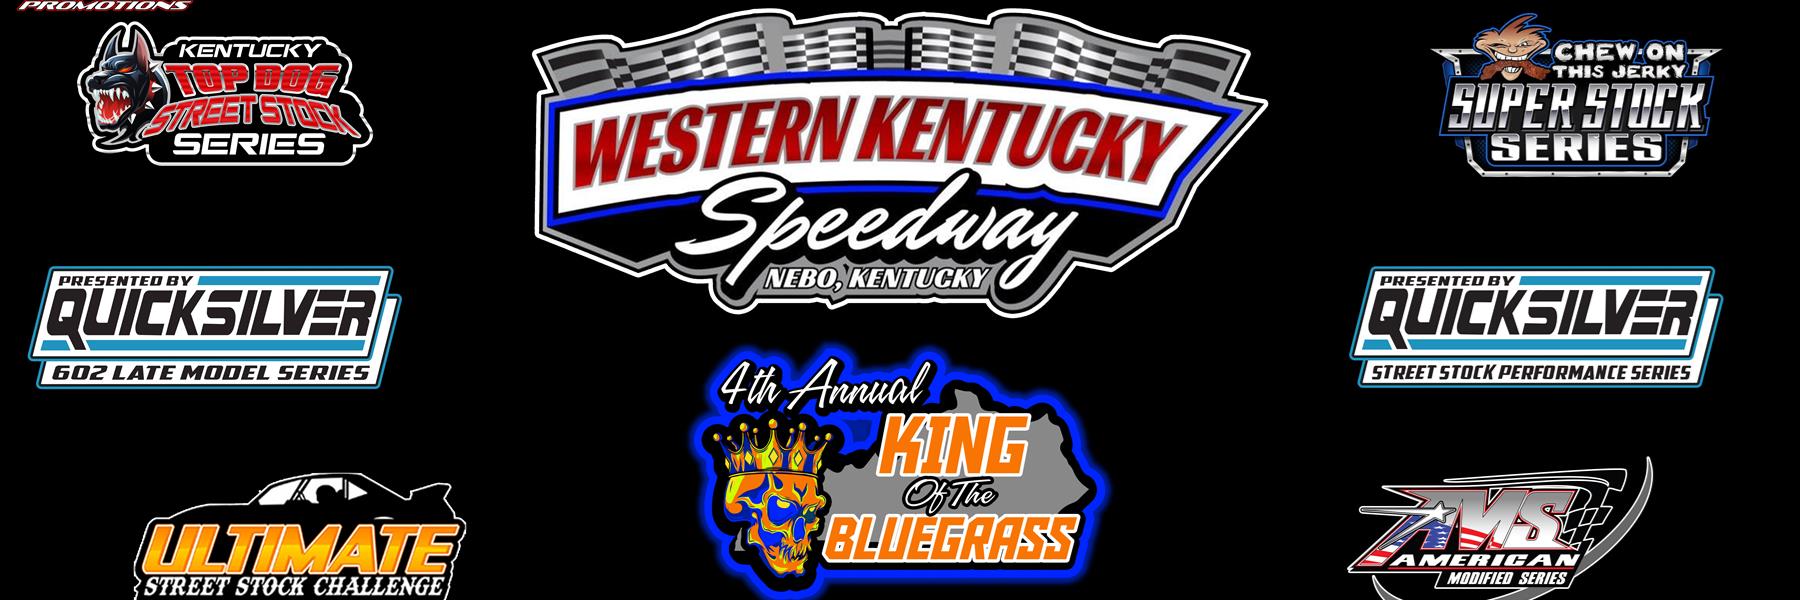 6/18/2022 - Western Kentucky Speedway